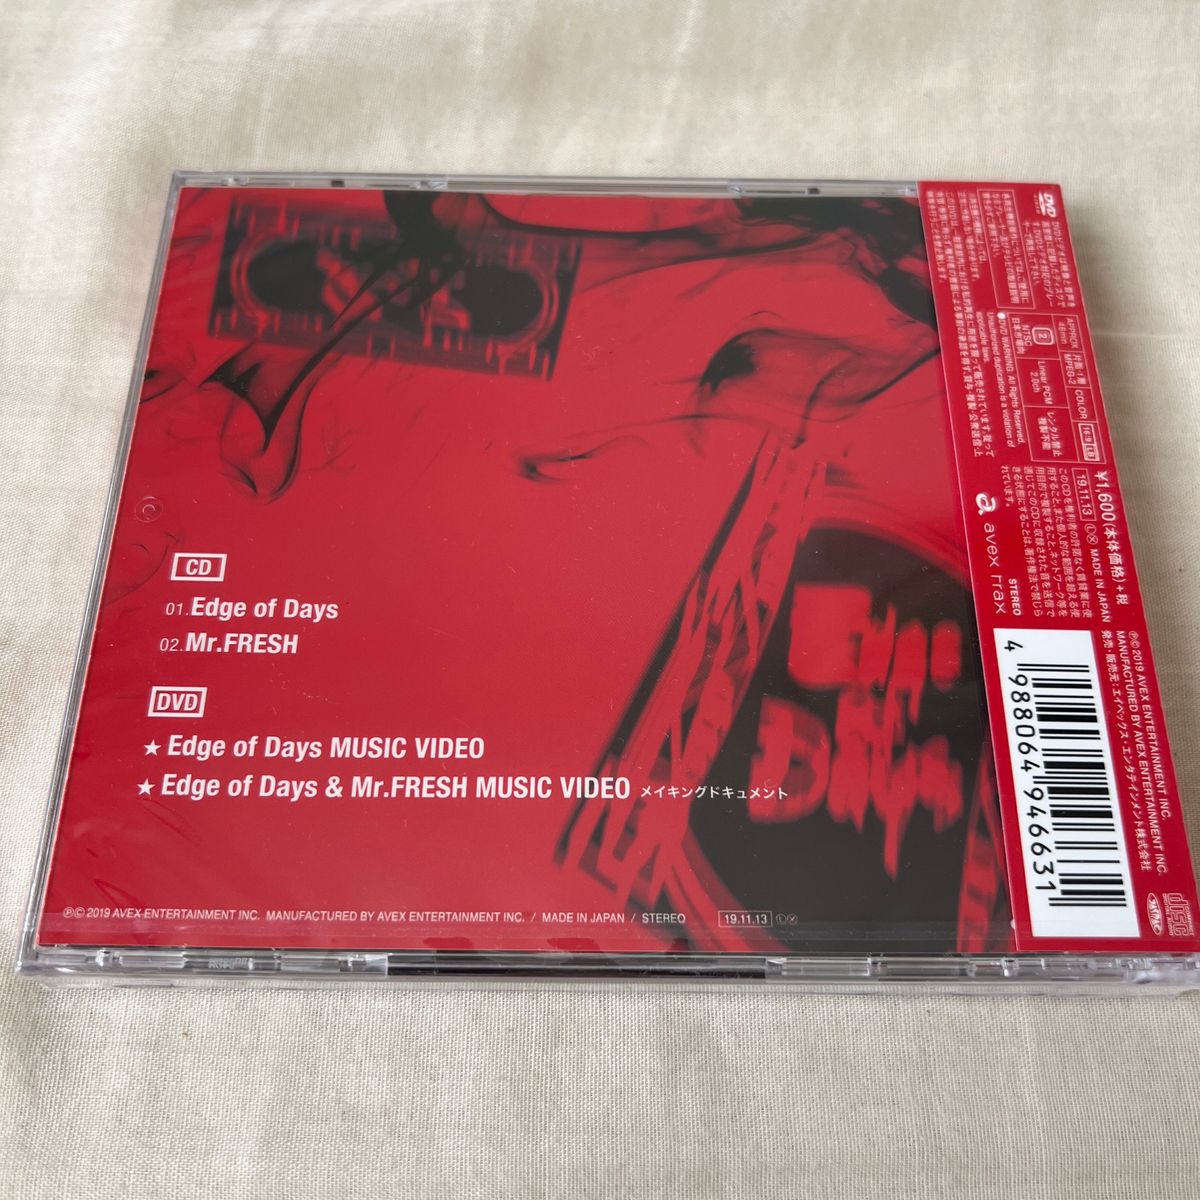 【未開封】初回盤A Kis-My-Ft2 CD+DVD/Edge of Days 19/11/13発売 オリコン加盟店